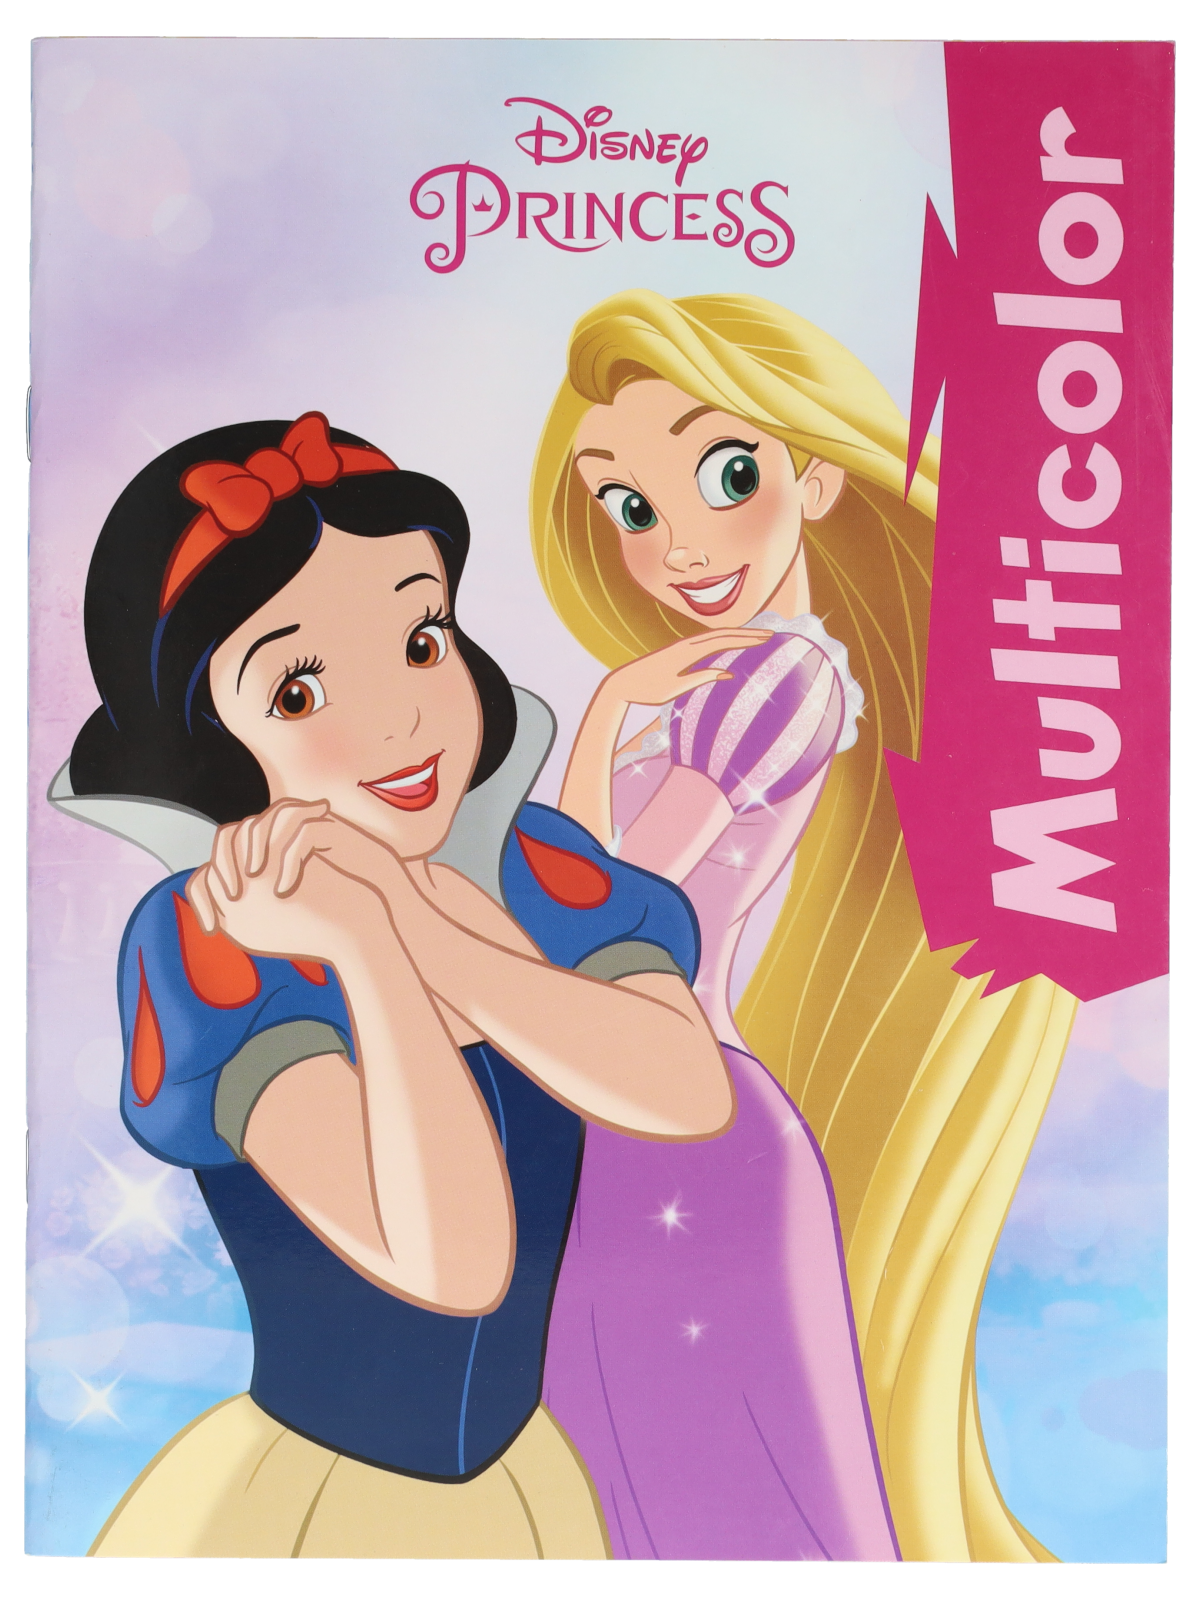 Disney Livre De Coloriage: Livre de Coloriage Disney pour Enfants